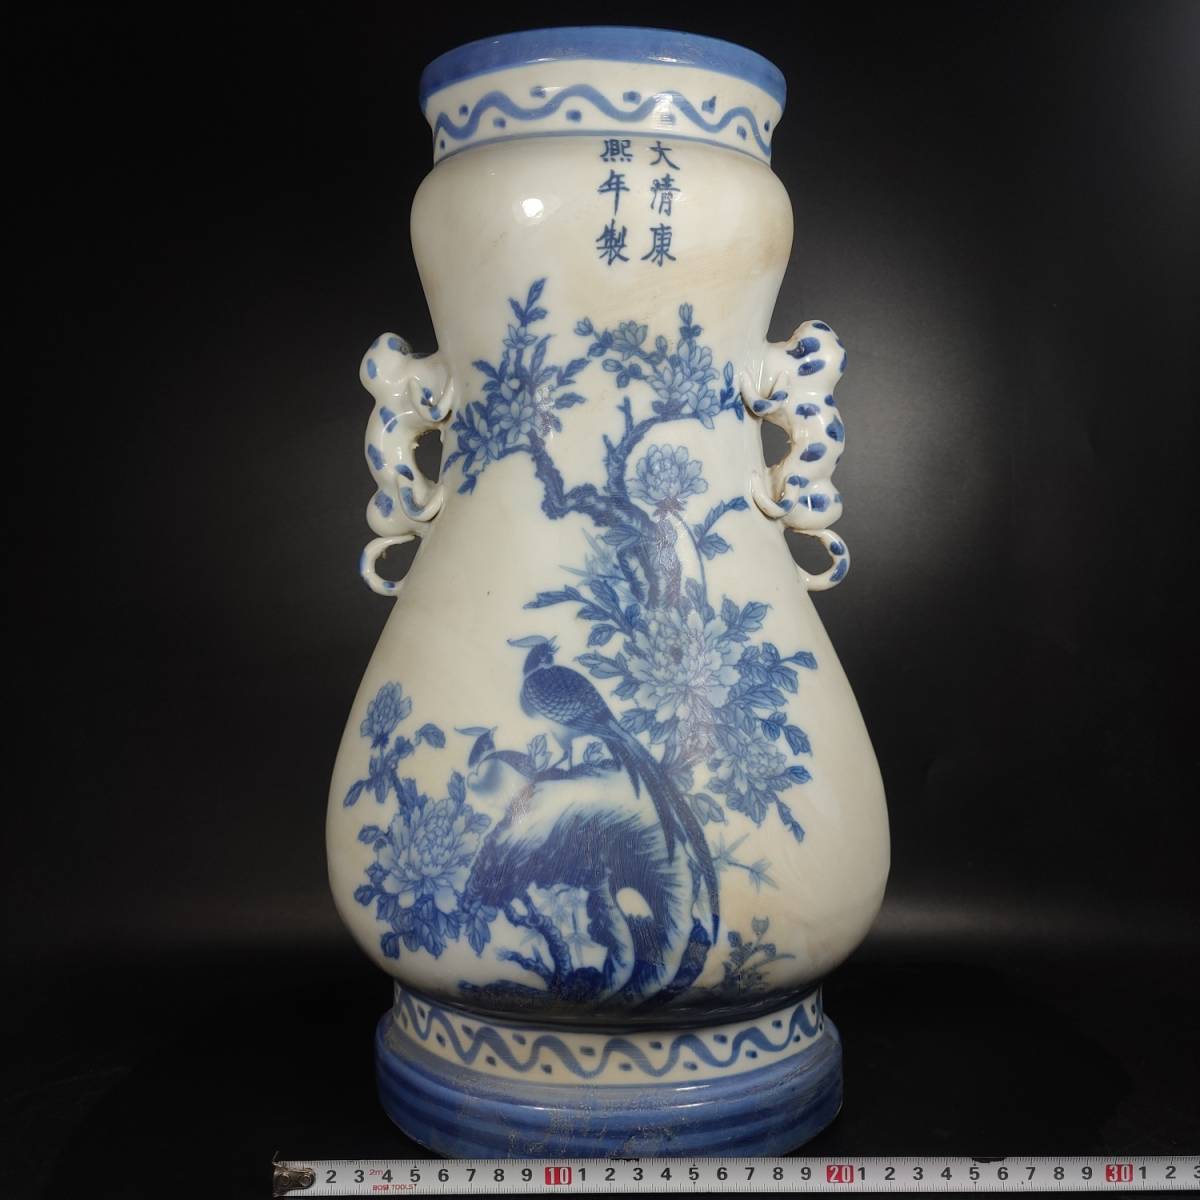 新作正規品花瓶 古賞物 超美品 中国古美術 造型精美 清